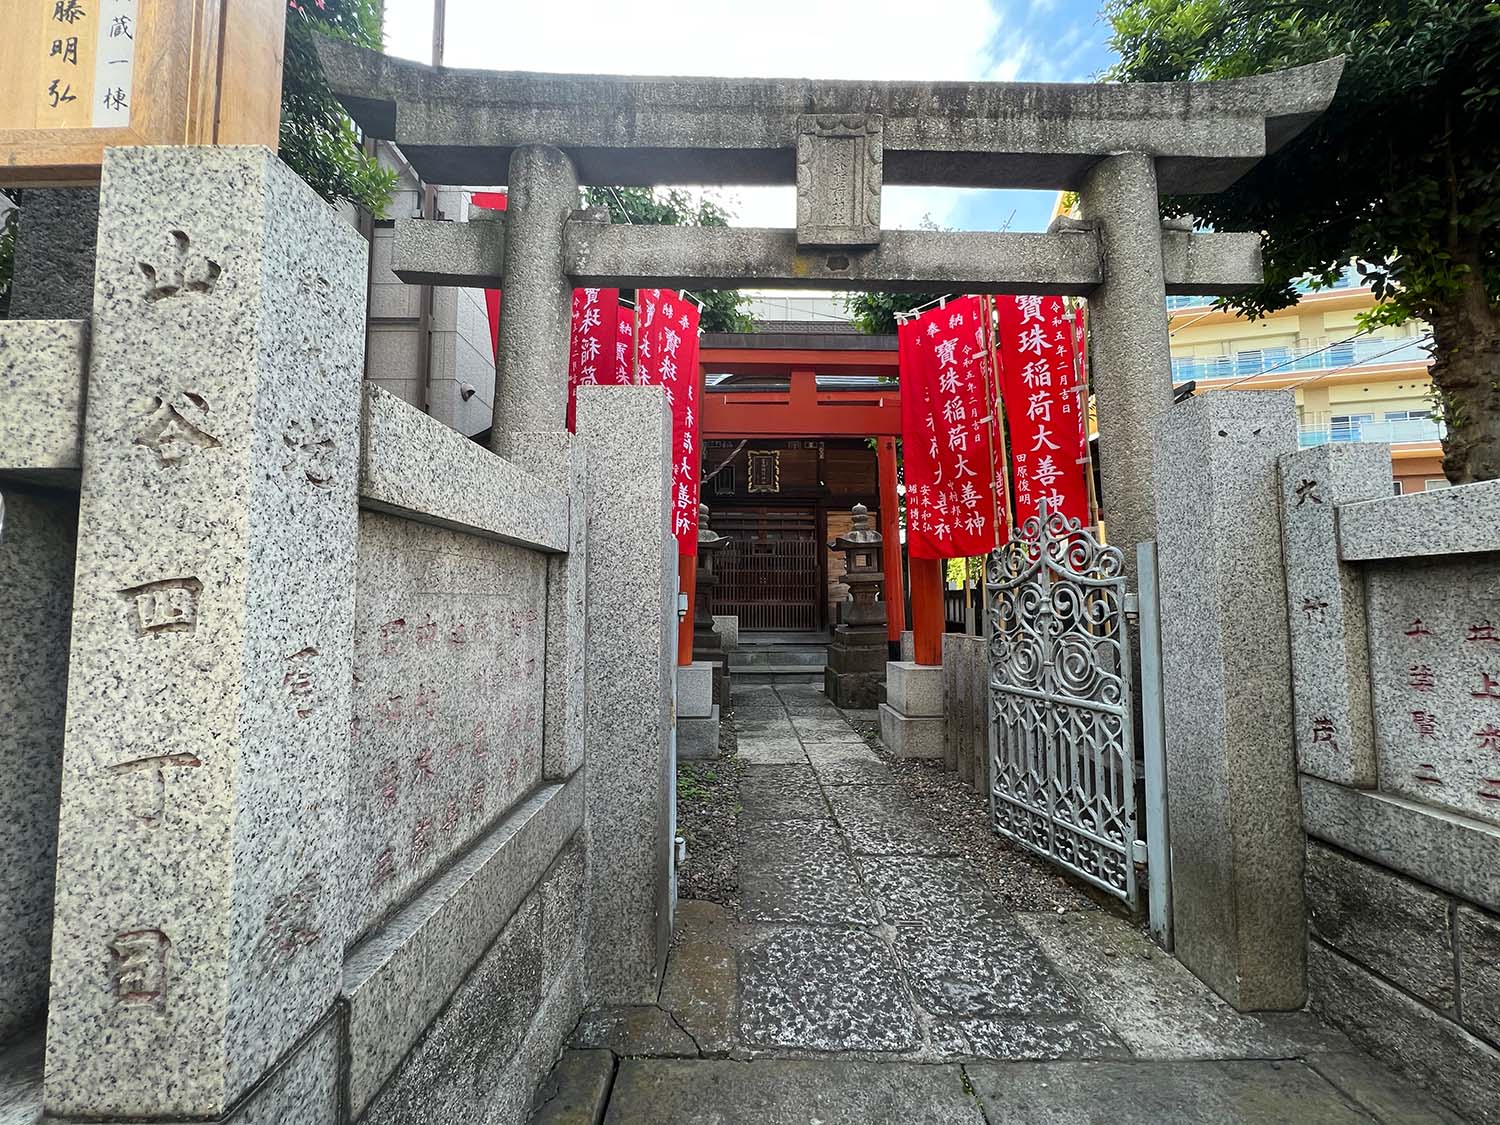 泪橋交差点にほど近い珠姫稲荷神社の石柱には、まだ昔の住居表示が残っている。